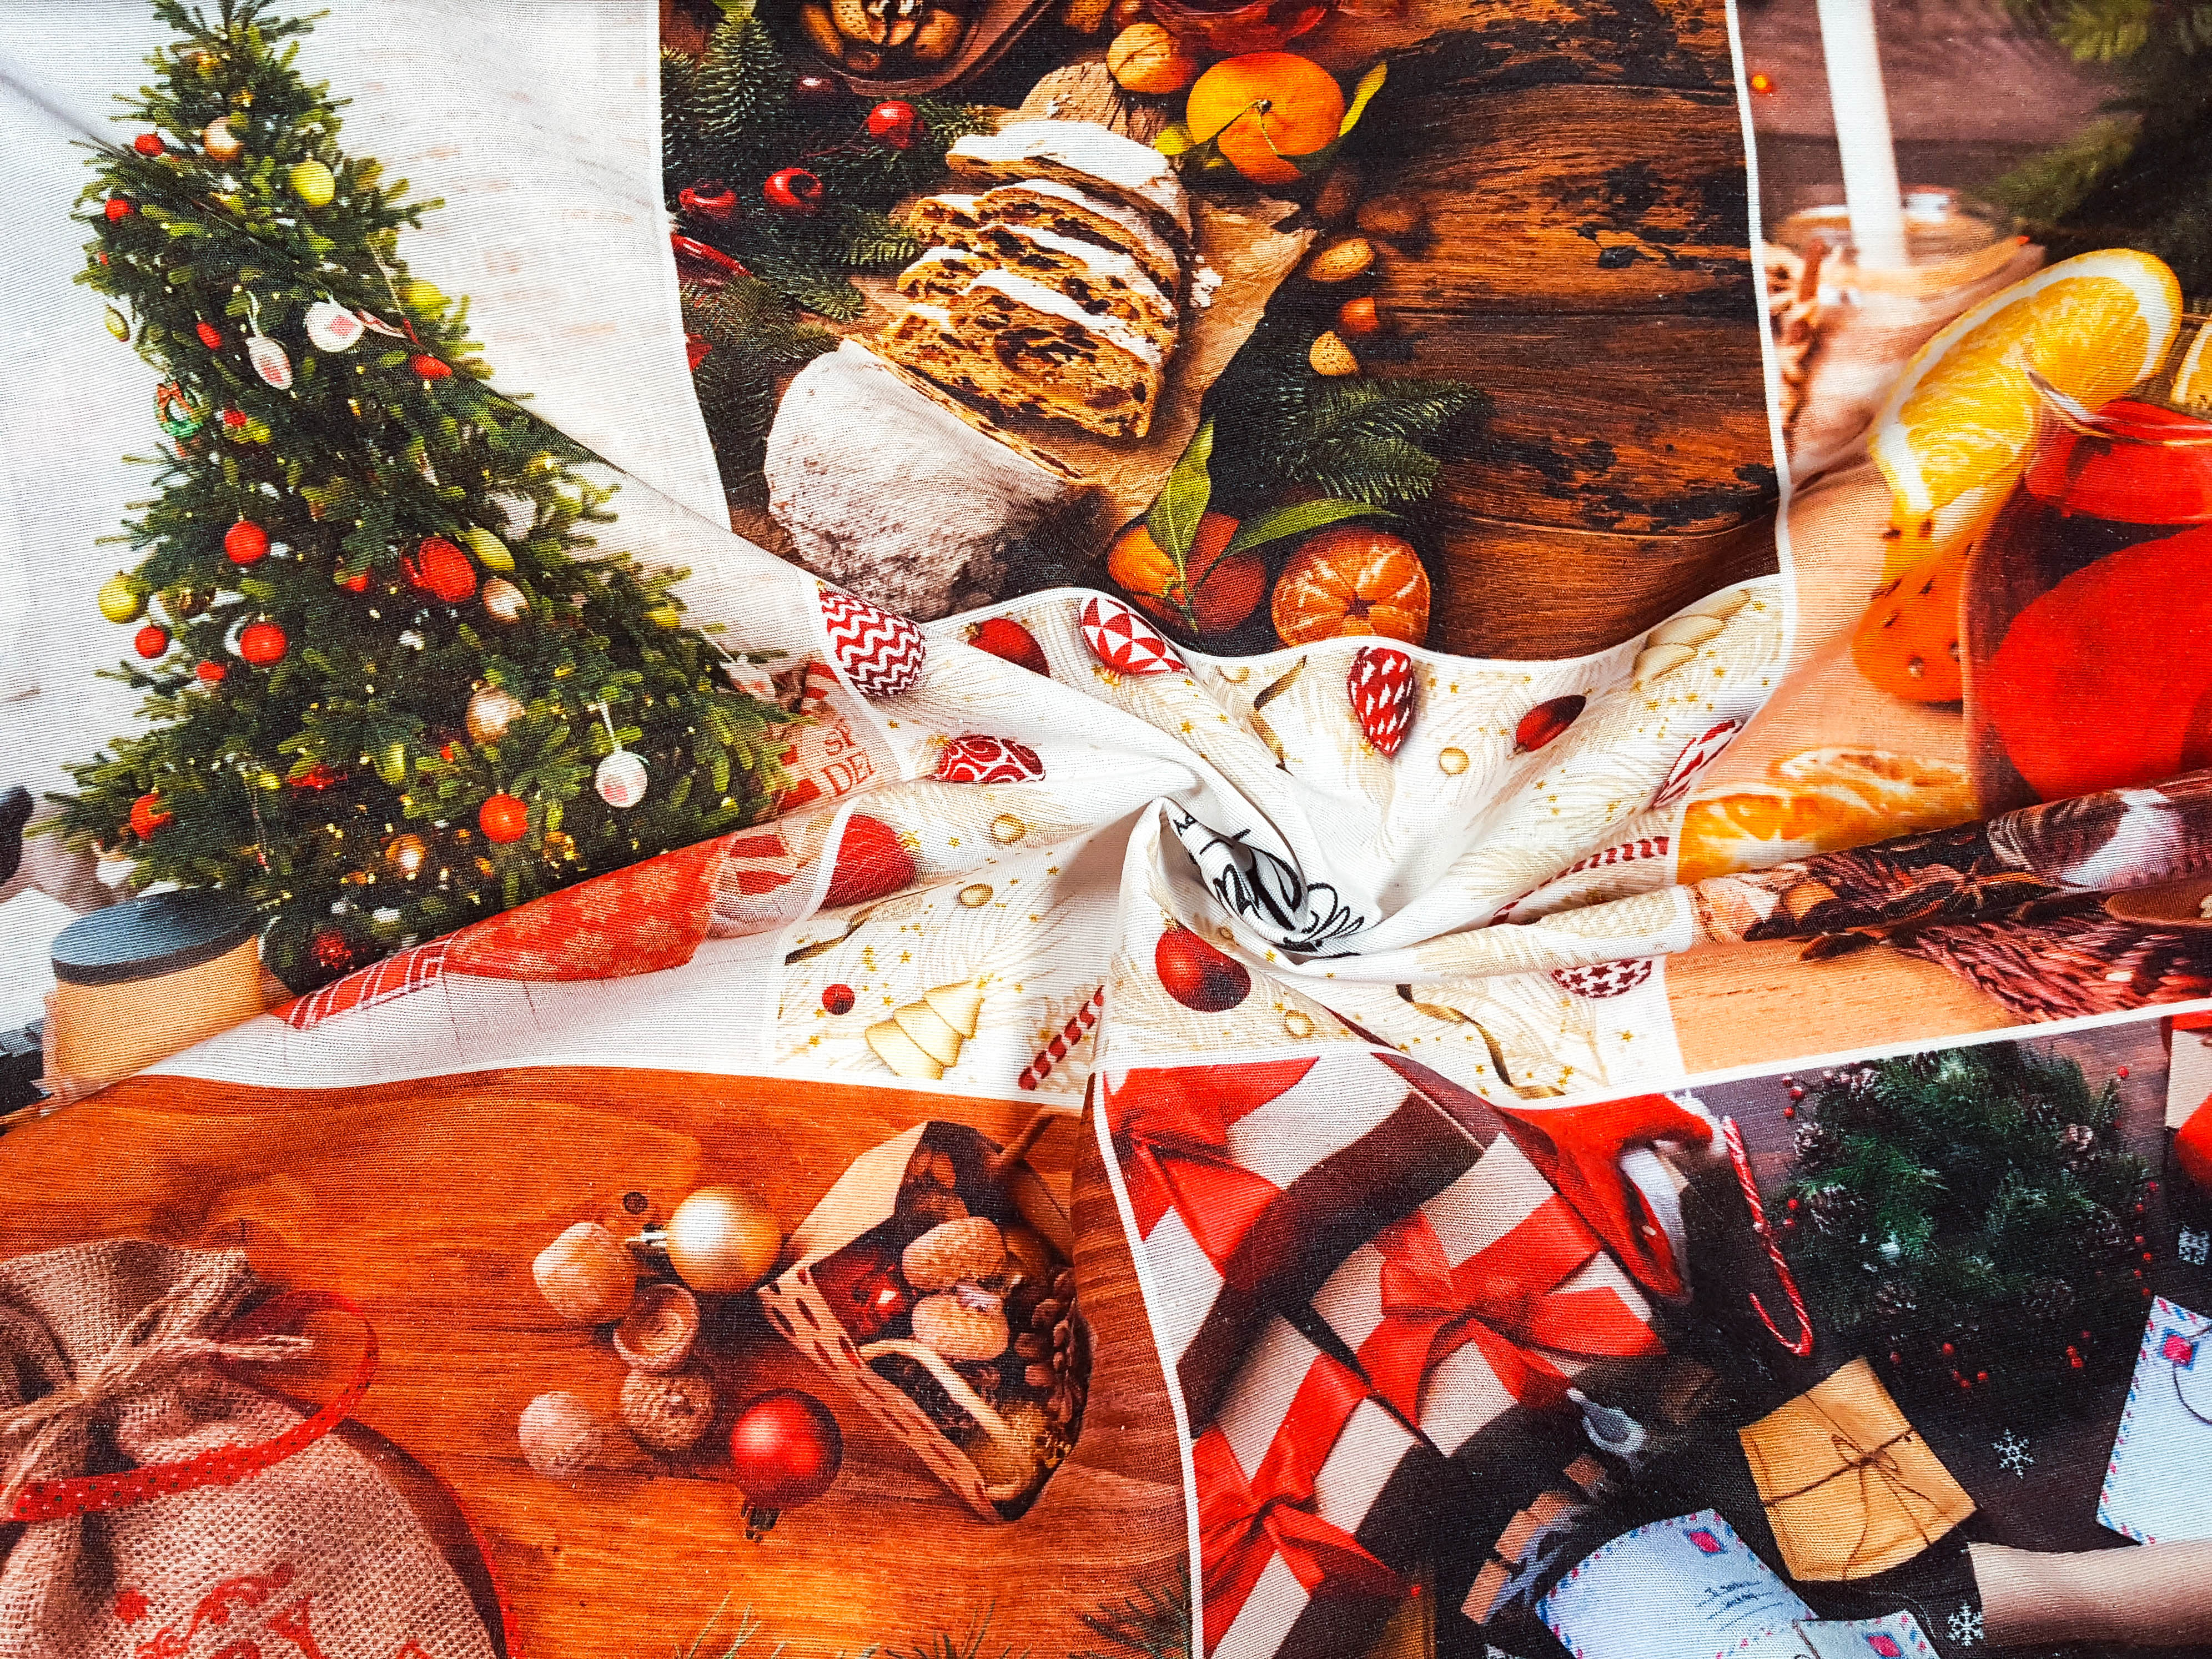 Textillux.sk - produkt Vianočná dekoračná látka Santova pošta 160 cm